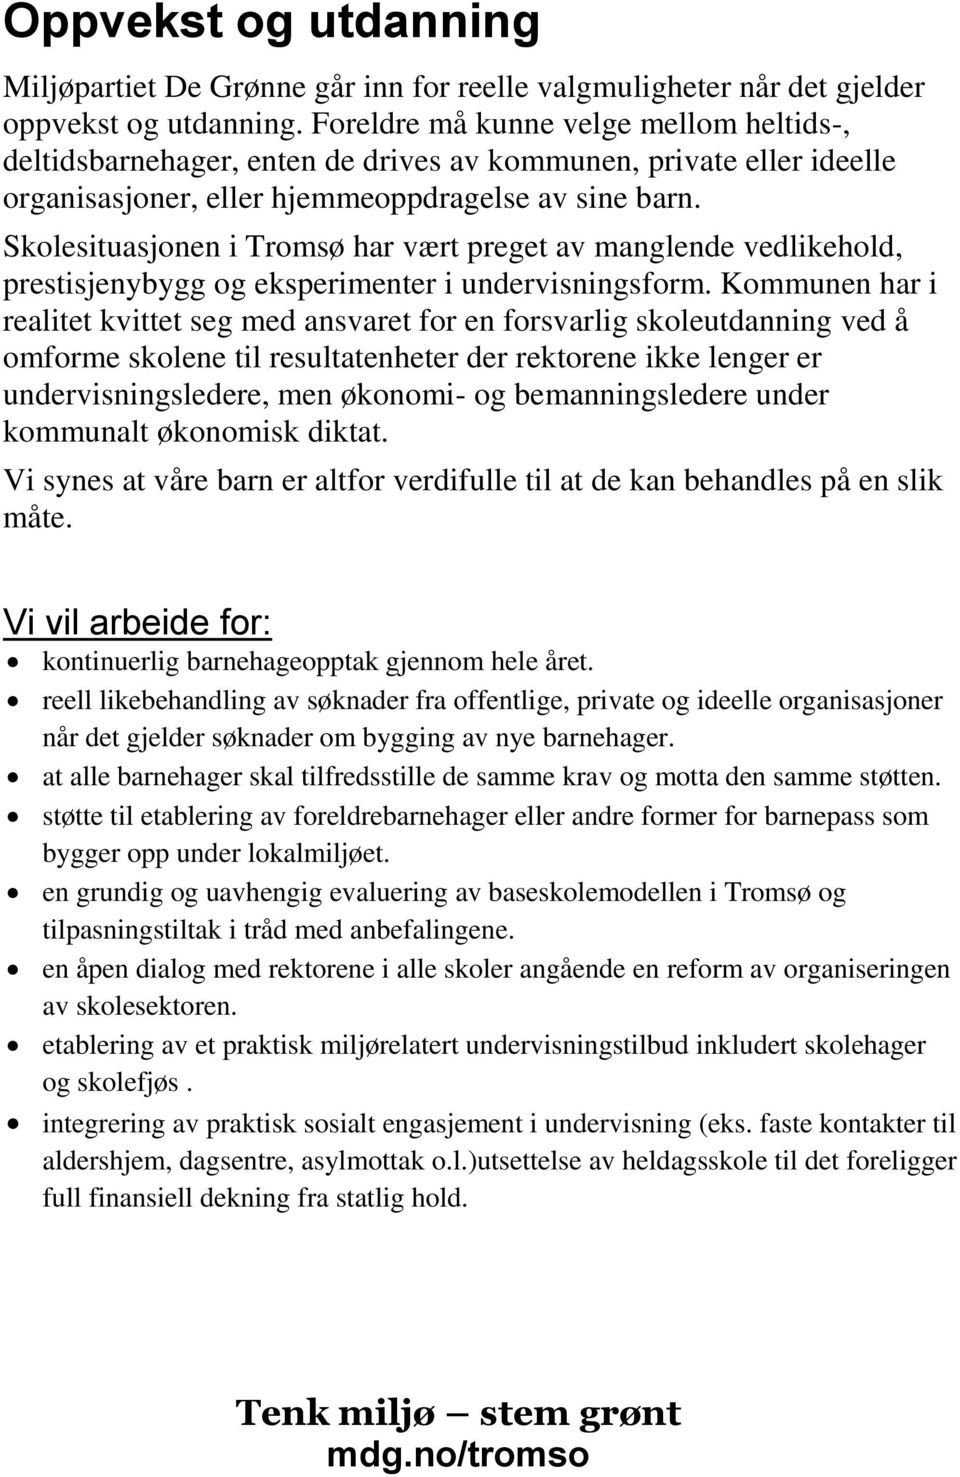 Skolesituasjonen i Tromsø har vært preget av manglende vedlikehold, prestisjenybygg og eksperimenter i undervisningsform.